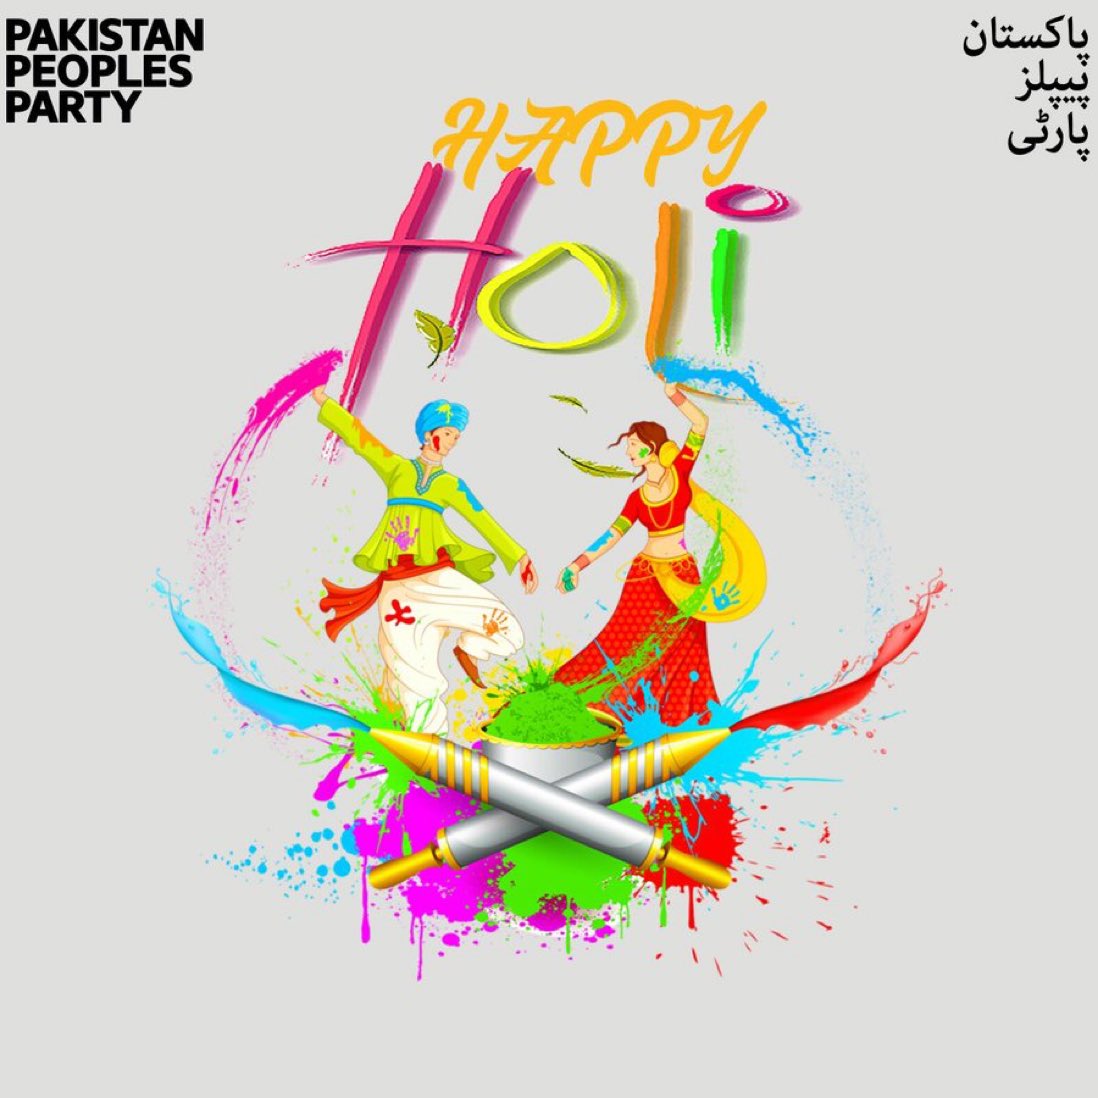 پاکستان پیپلز پارٹی کی جانب سے ملک بھر میں بسنے والی ہندو برادری اور دنیا بھر میں رنگوں کا تہوار منانے والوں کو ہولی کی دلی مبارکباد #HappyHoli